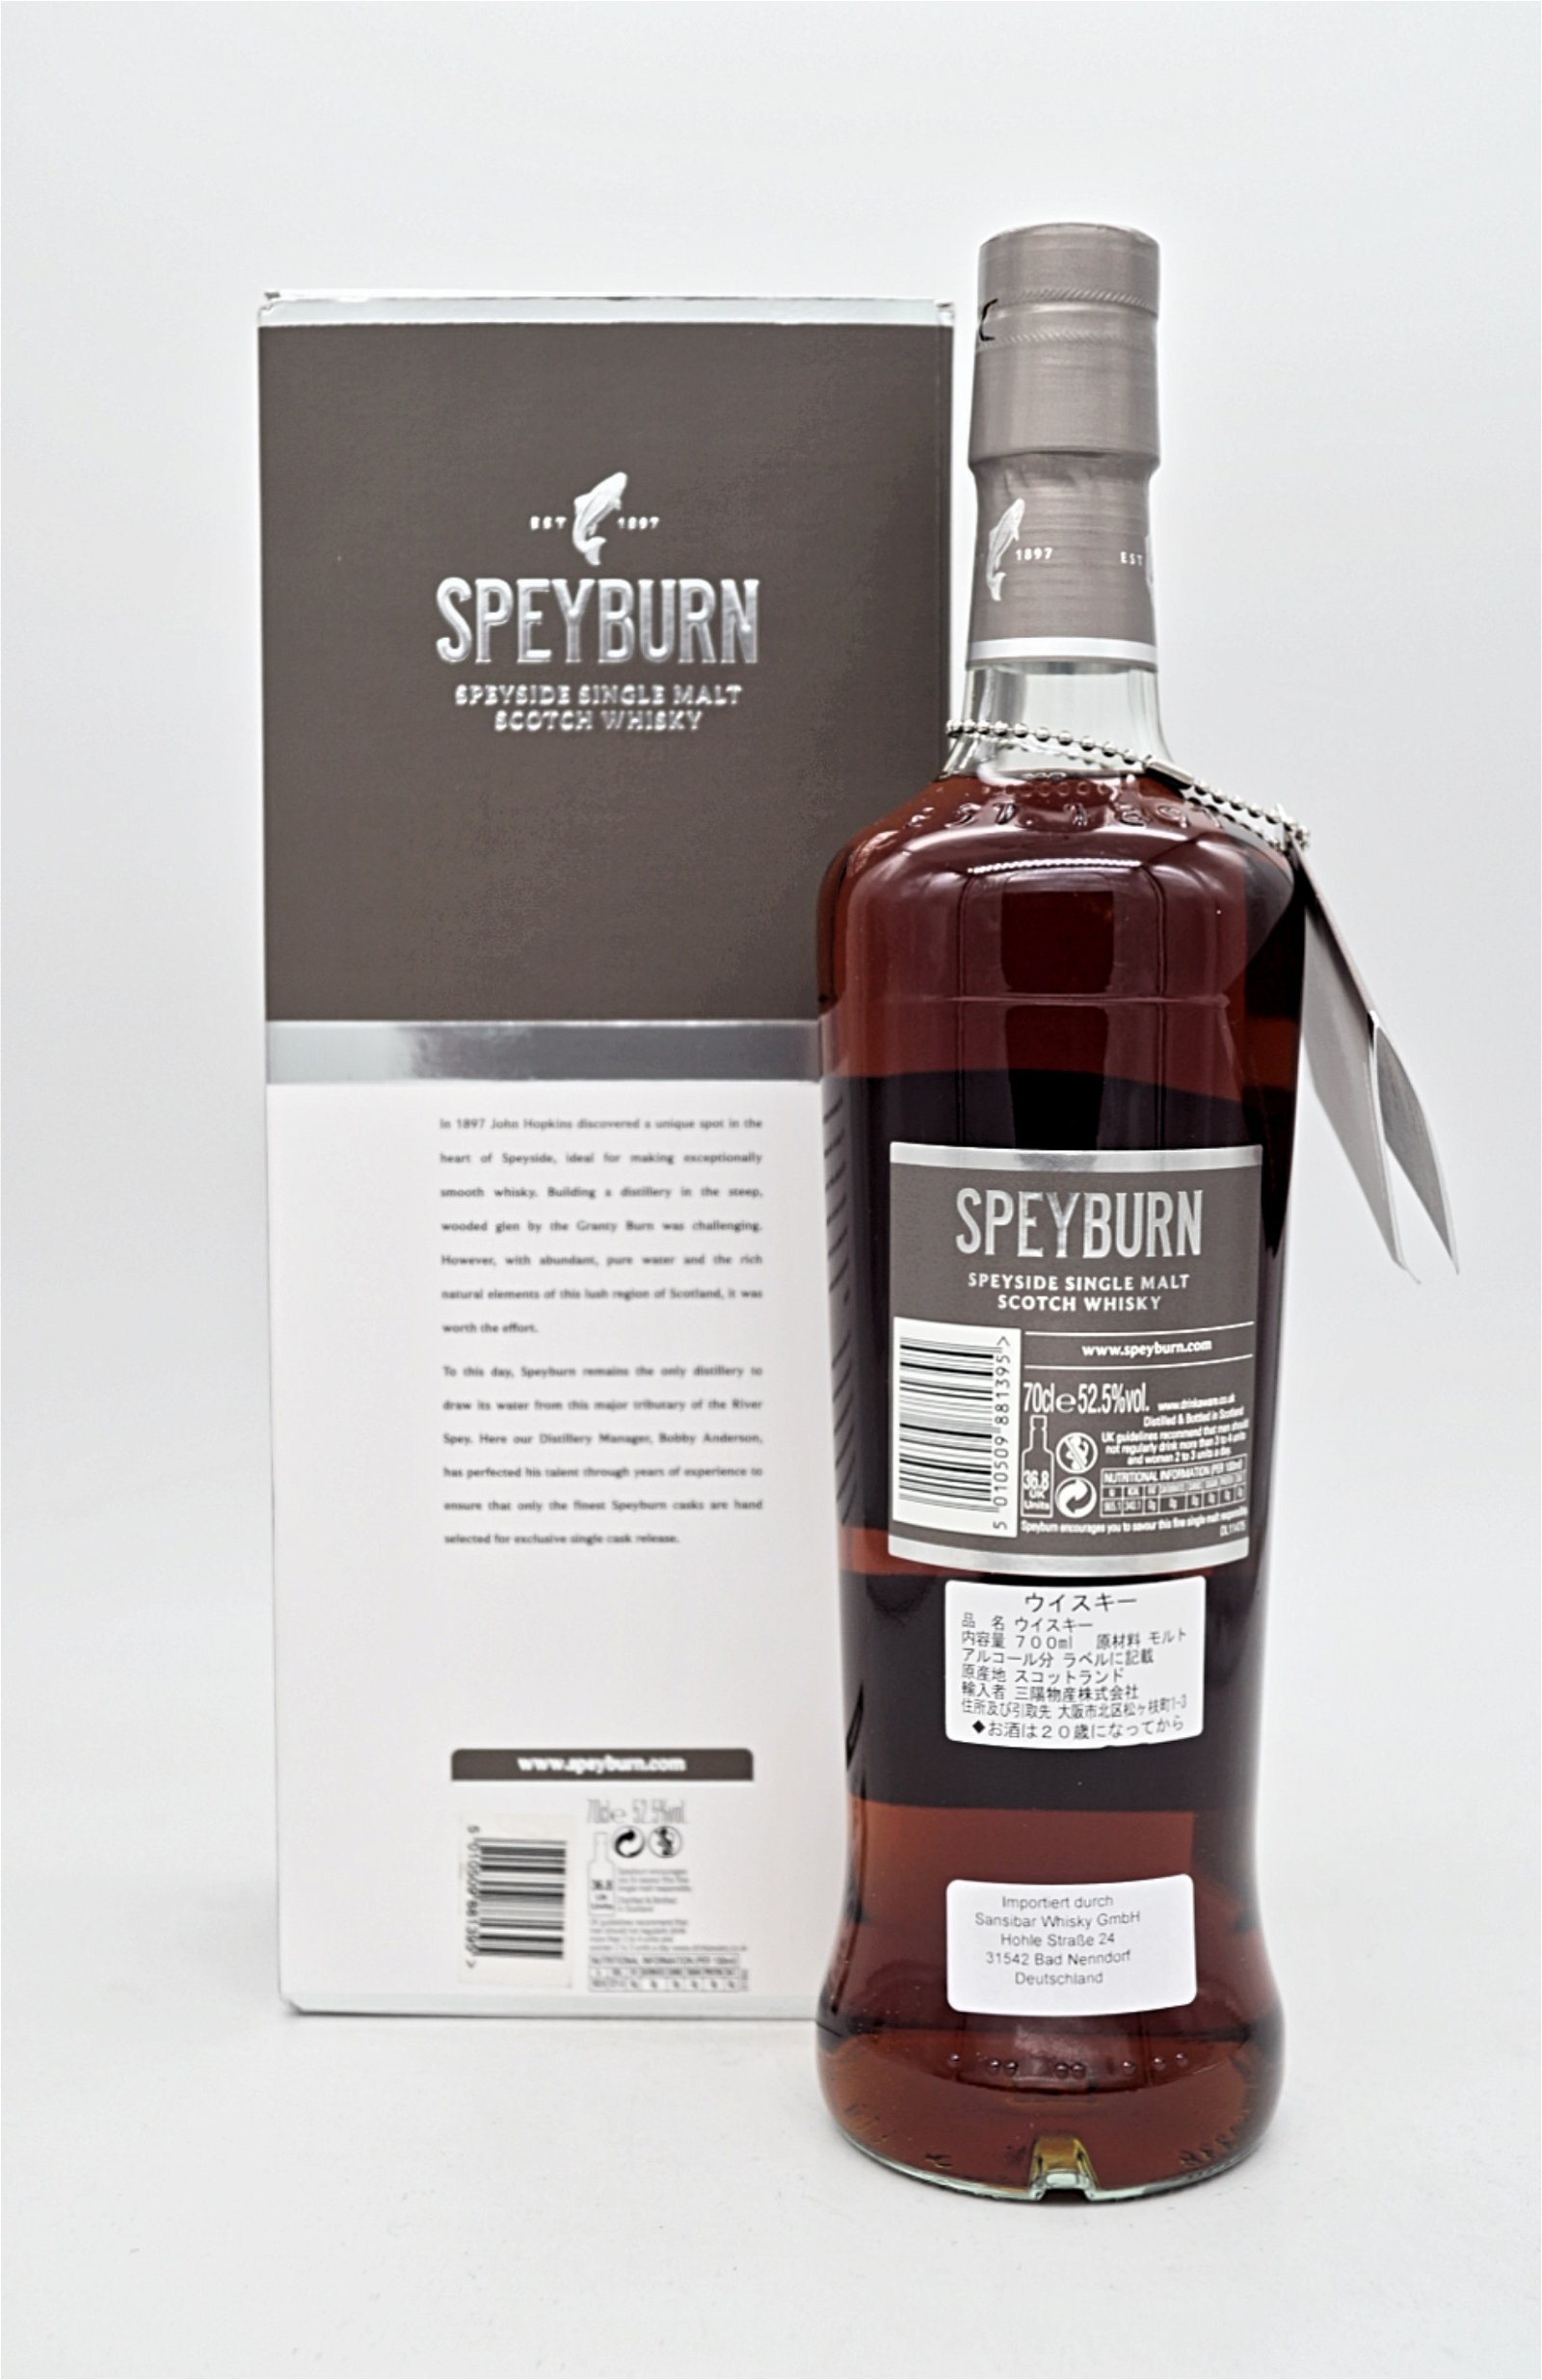 Speyburn 13 Jahre 2004/2017 First Fill Sherry Butt #214 Shinanoya Exklusive Speyside Single Malt Scotch Whisky